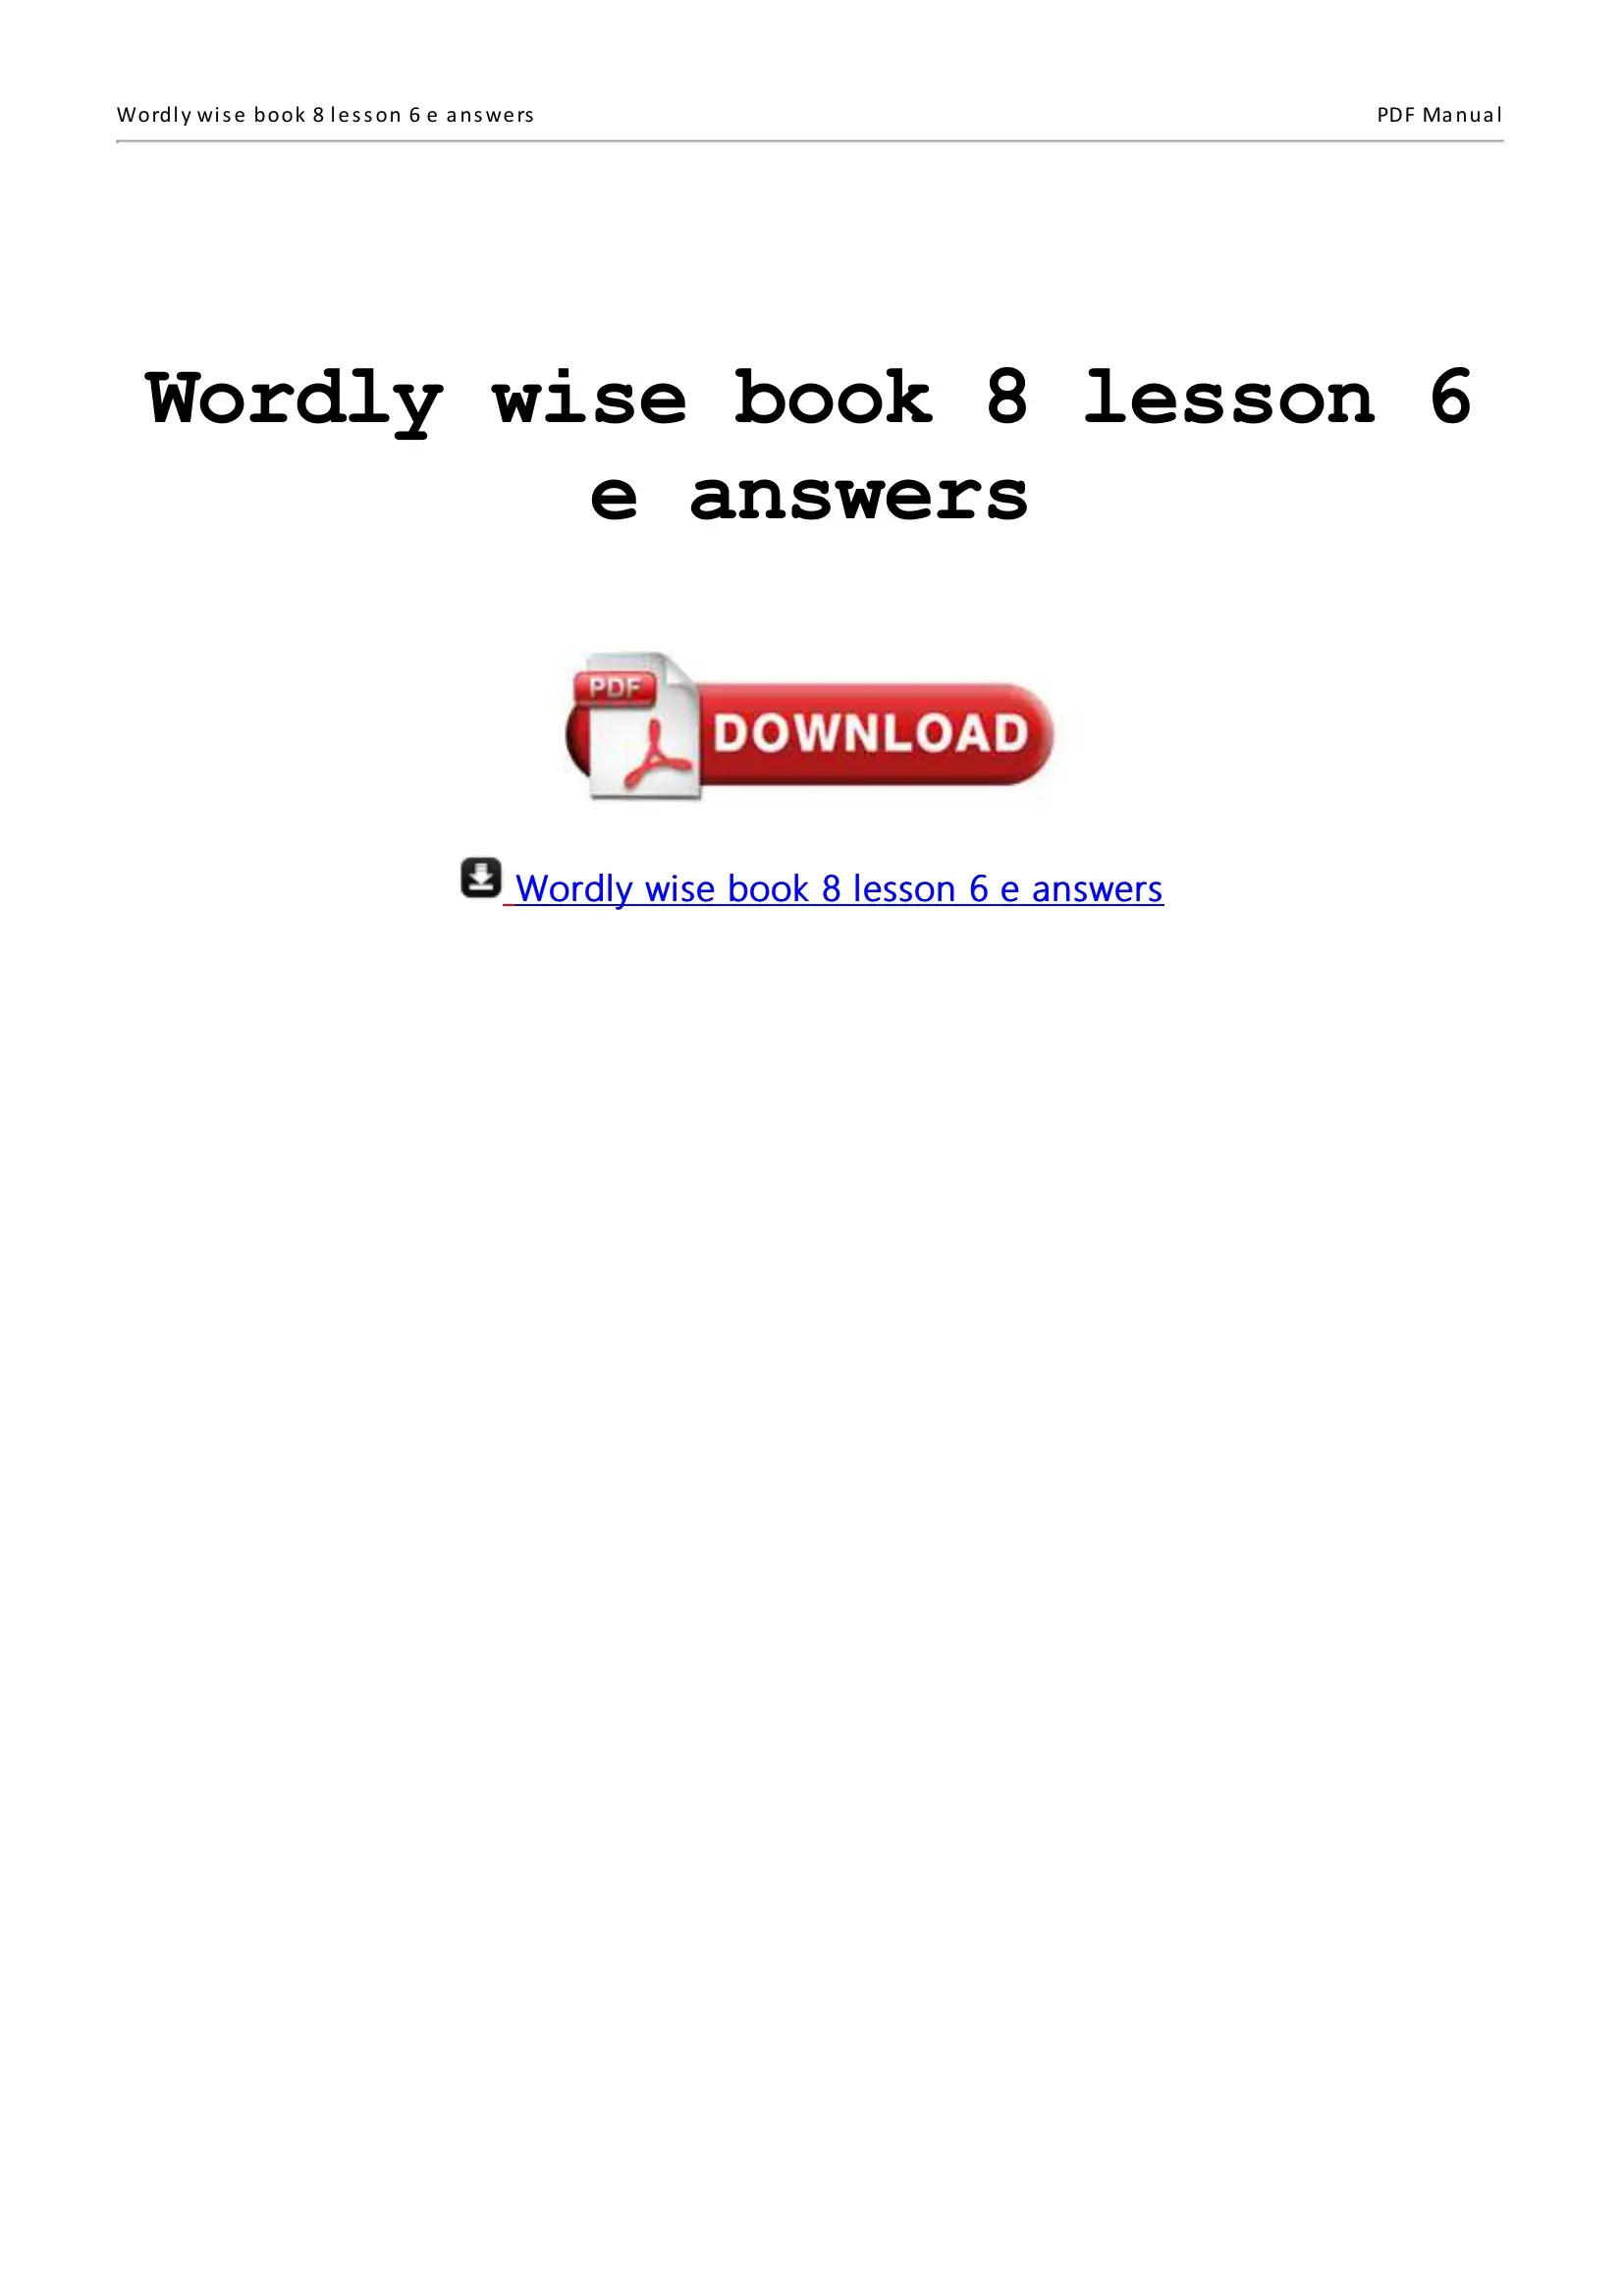 lesson 9 homework 3.1 answer key